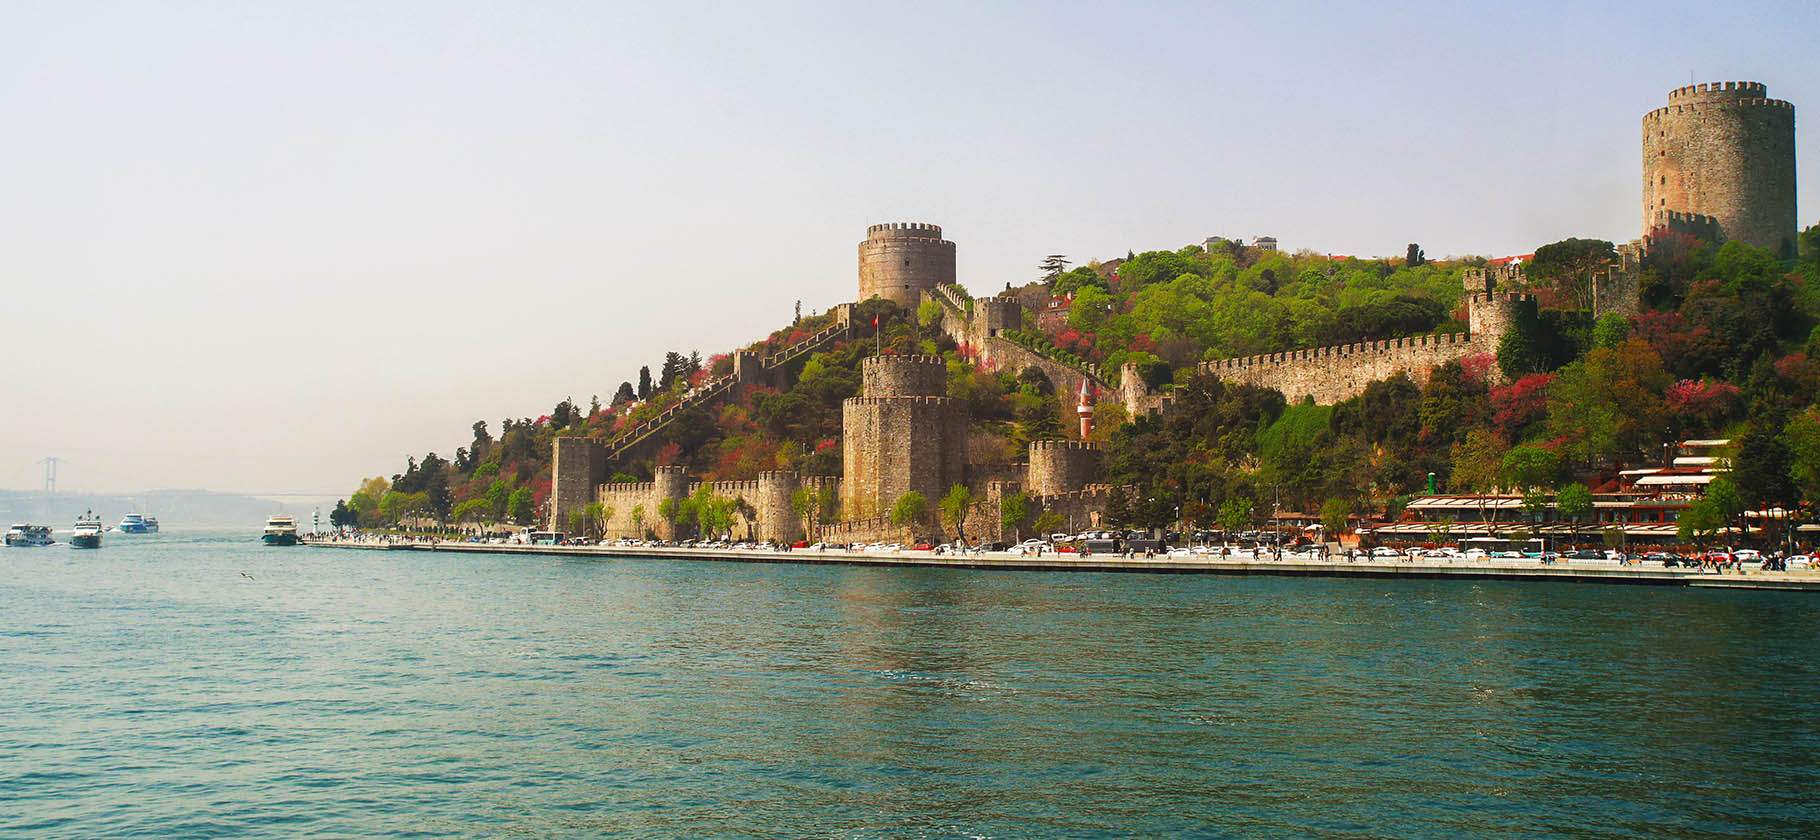 14 достопримеча­тельностей Стамбула, которые стоит посетить